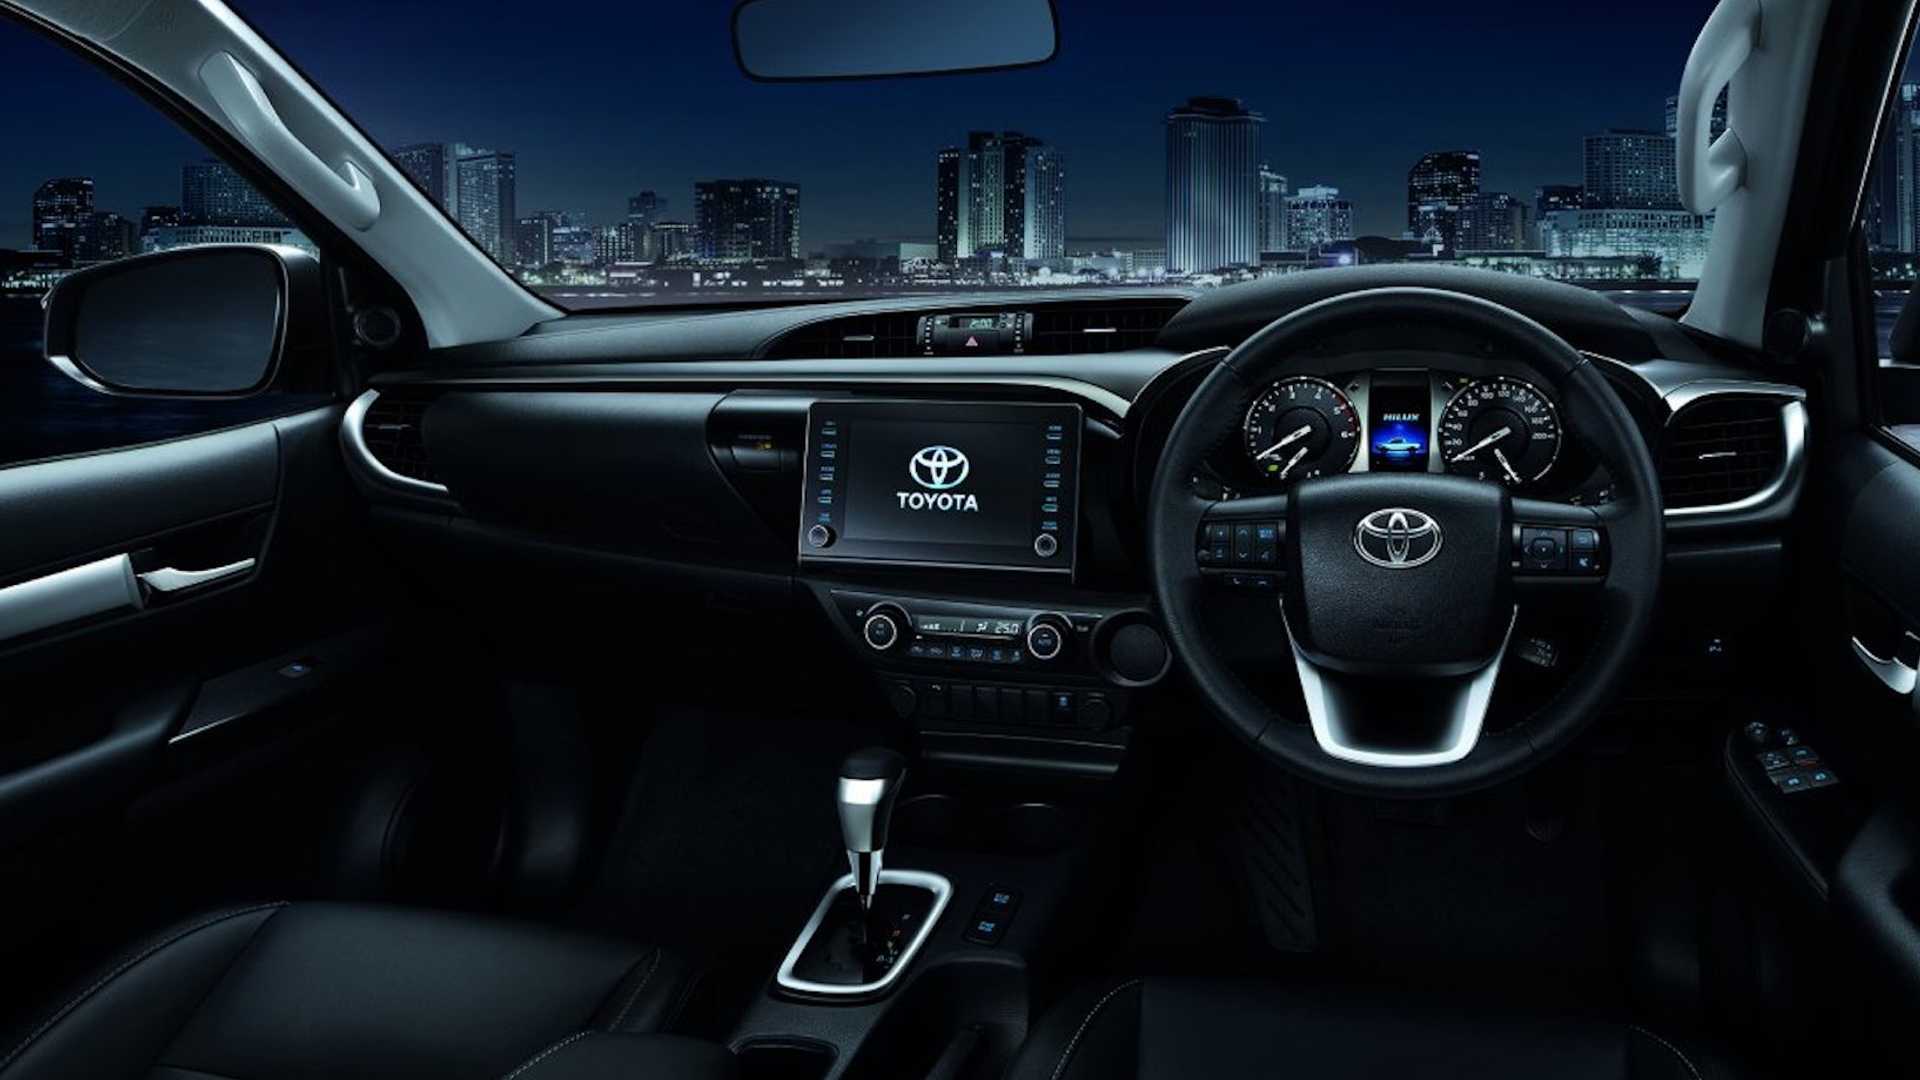 Toyota: Xe Toyota luôn được biết đến với sự bền bỉ và độ tin cậy cao. Hãy xem hình ảnh về Toyota và tìm hiểu về những tính năng độc đáo của xe này.